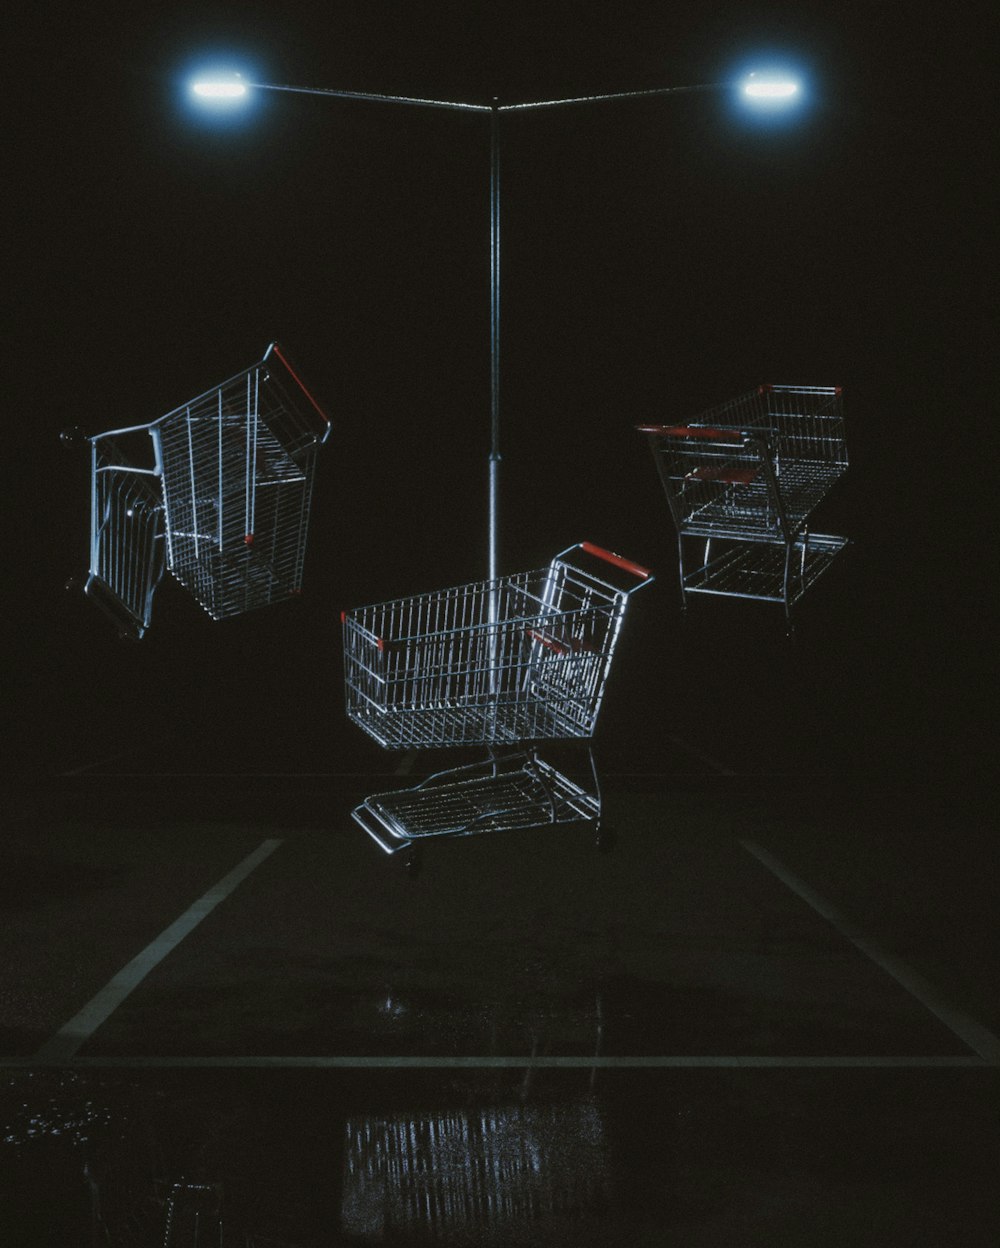 주차장 위에 앉아있는 두 개의 쇼핑 카트